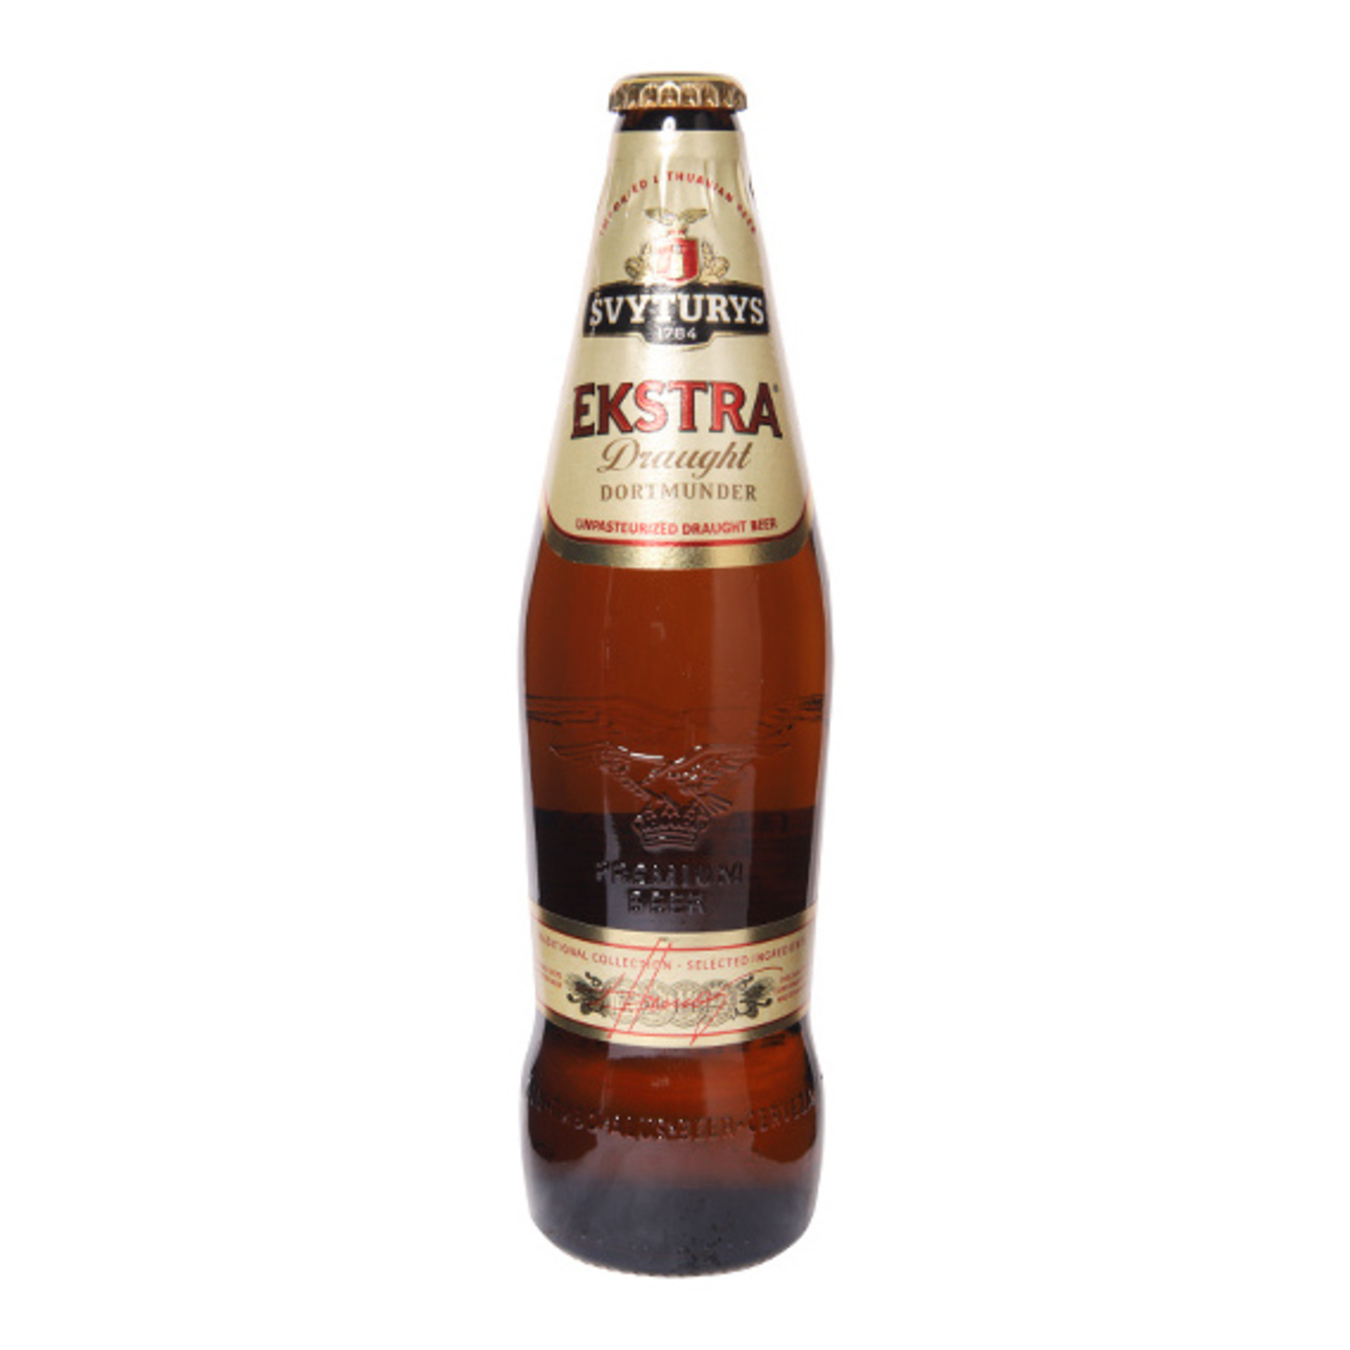 Пиво Svyturus Ekstra Draught Dortmunder светлое 5,2% 0,5л